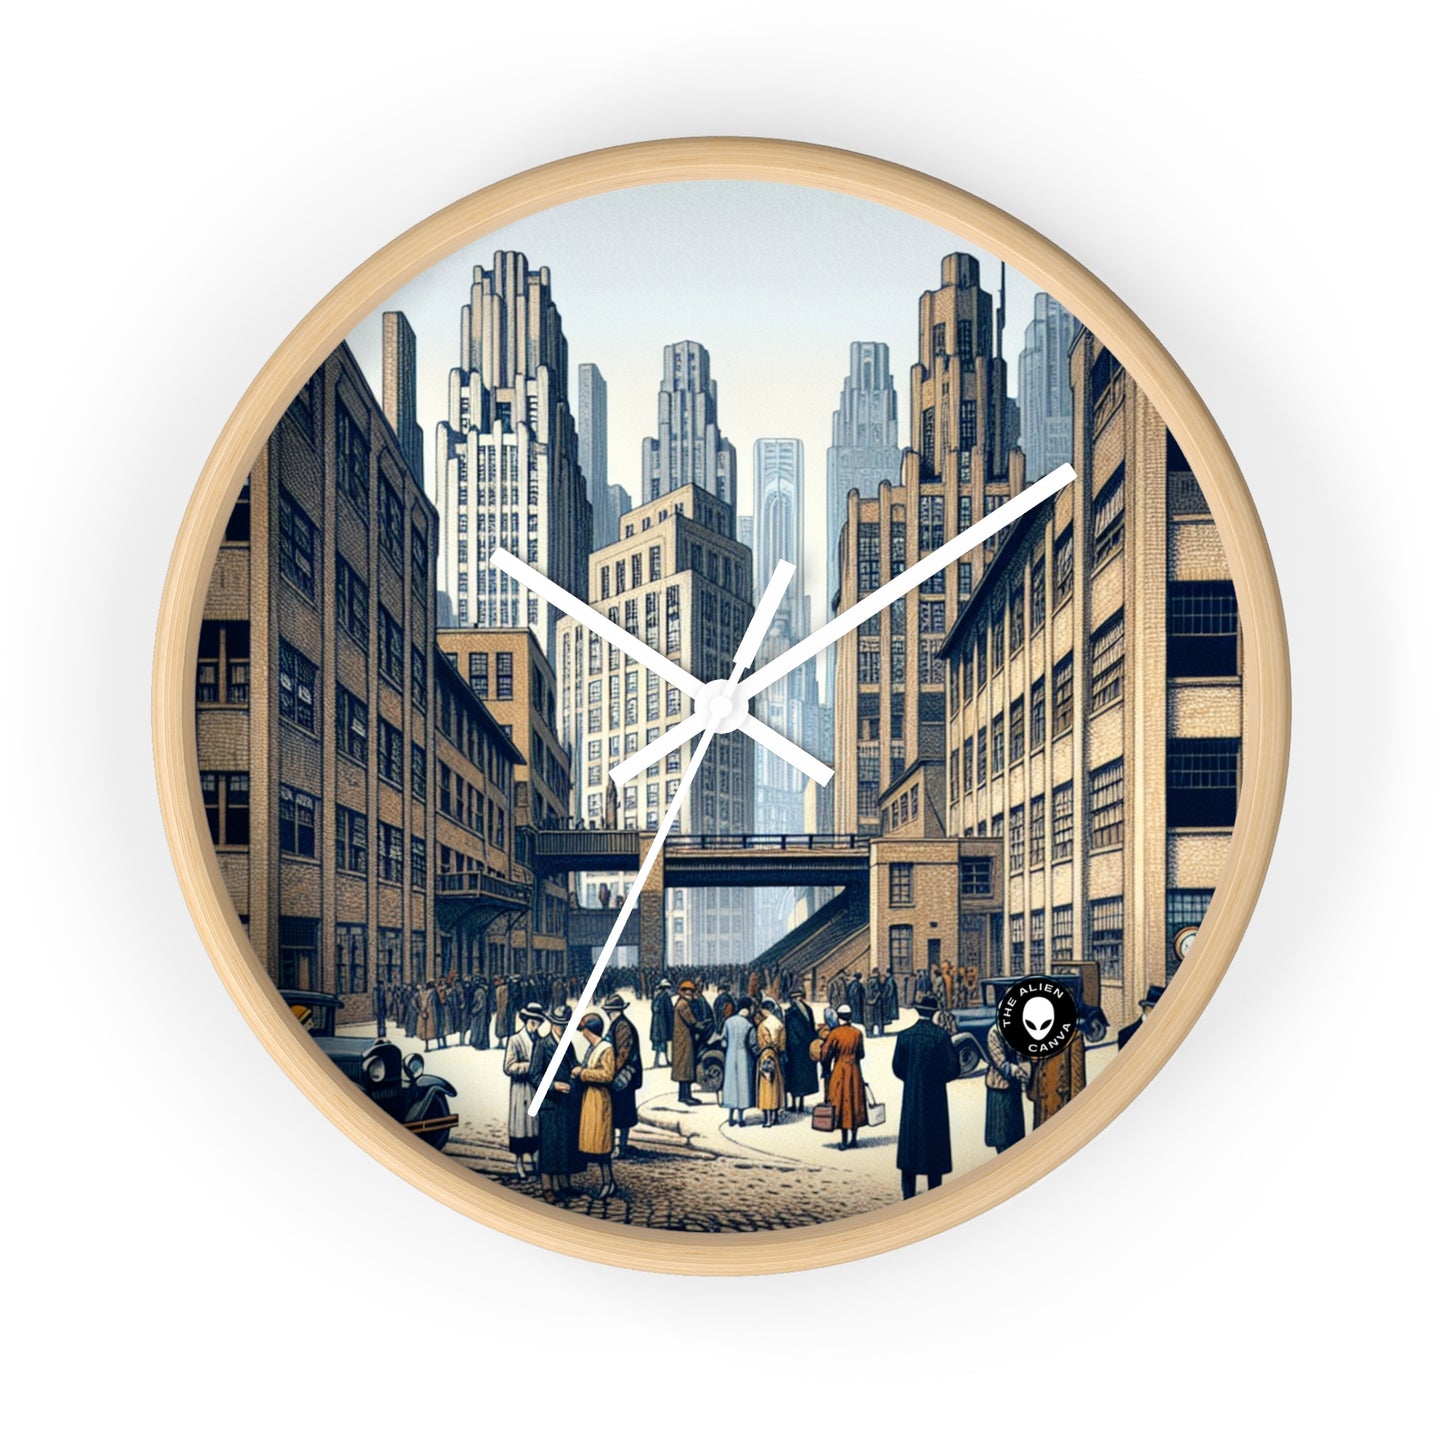 "Géométrie urbaine : un paysage urbain moderne dans une nouvelle objectivité" - L'horloge murale Alien New Objectivity